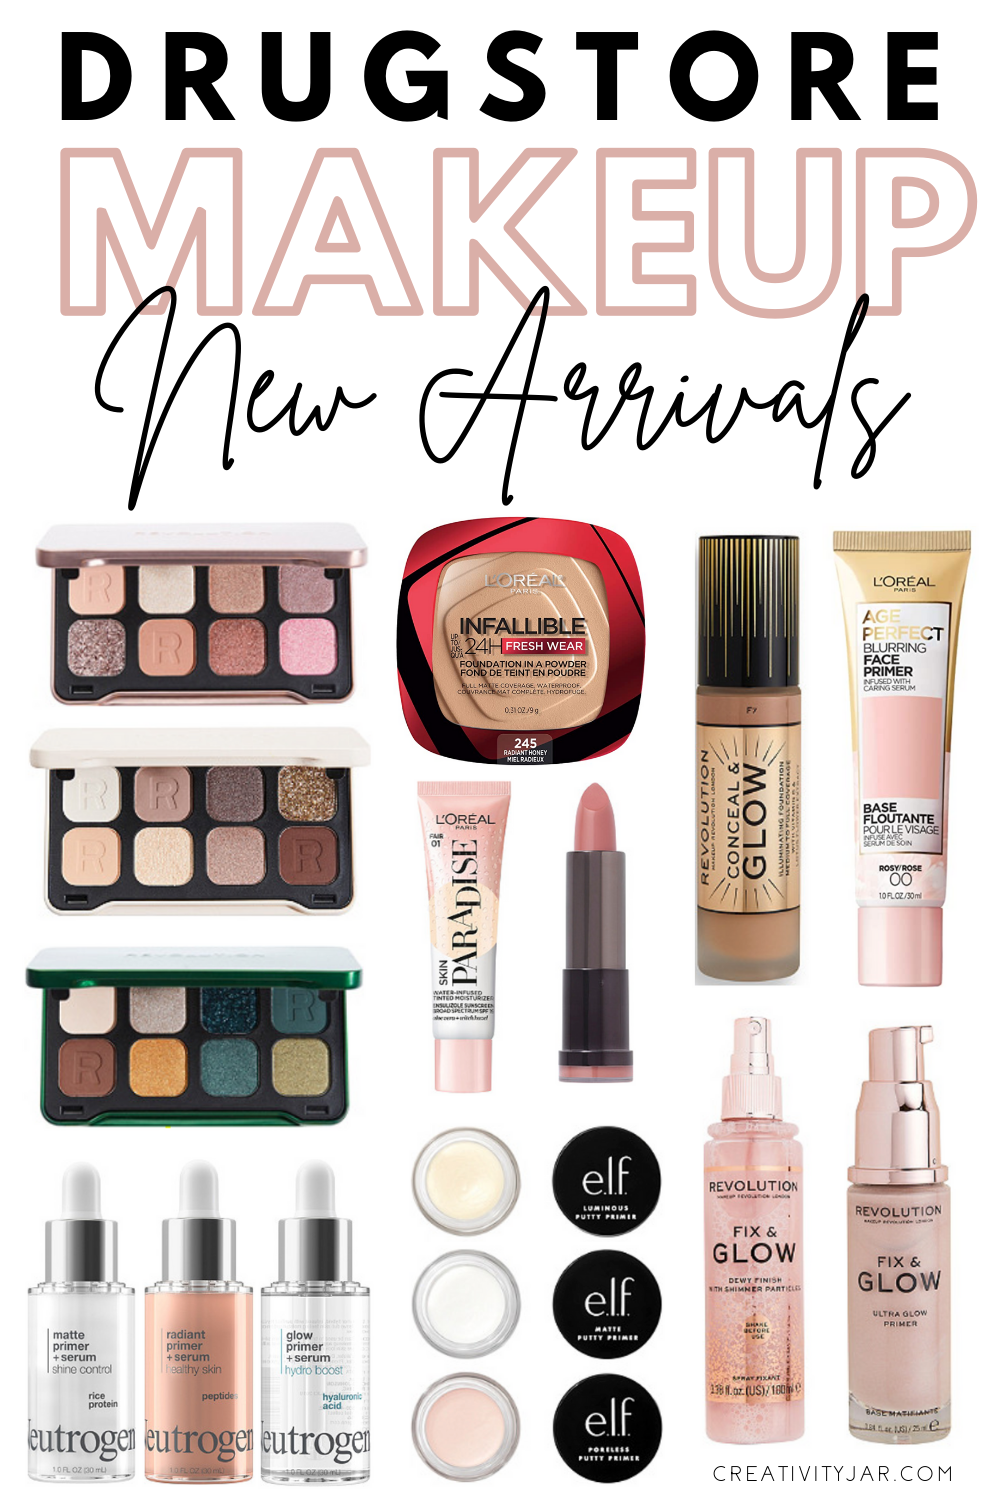 New Drugstore Makeup November 2020